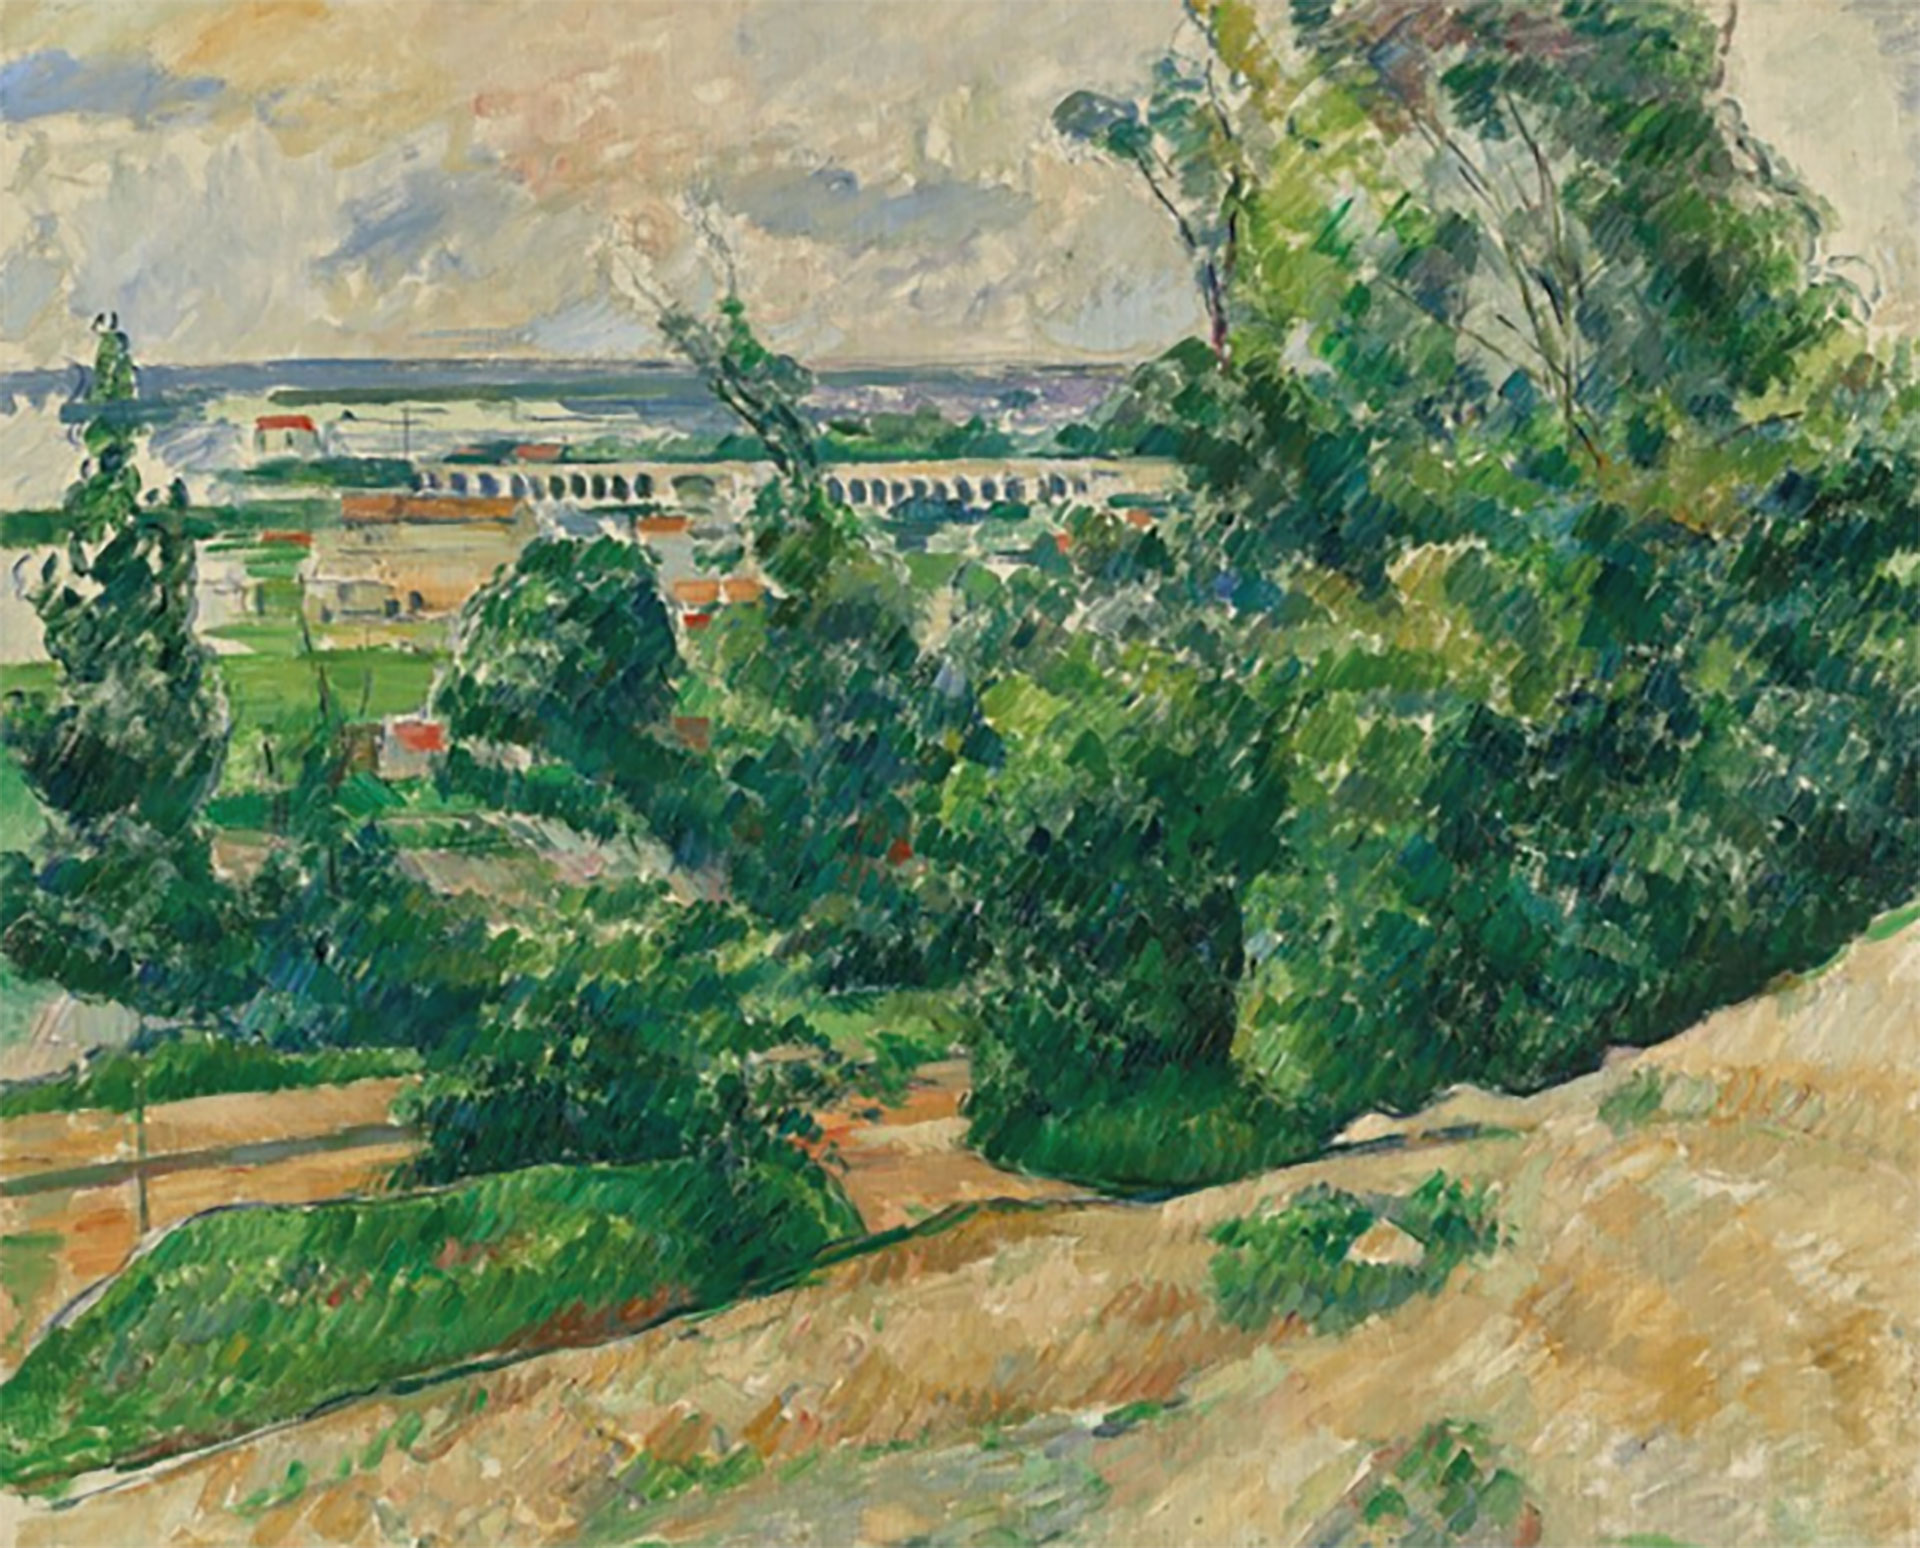 "L’Aqueduc du canal de Verdon au nord d’Aix", de Paul Cézanne, fue vendido por 7,15 millones de libras